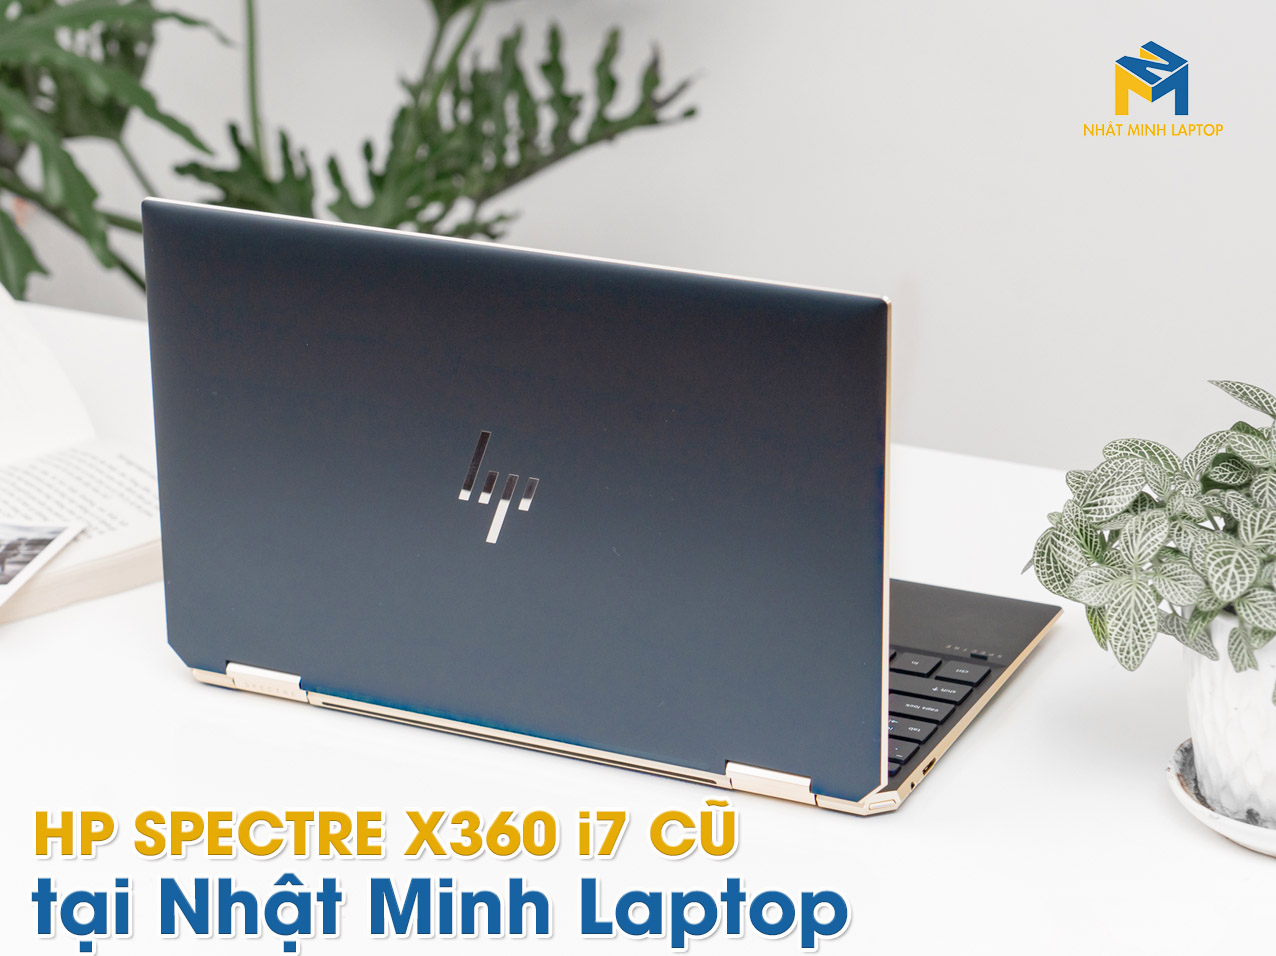 Top 3 Chiếc HP Spectre X360 I7 Cũ tại Nhật Minh Laptop